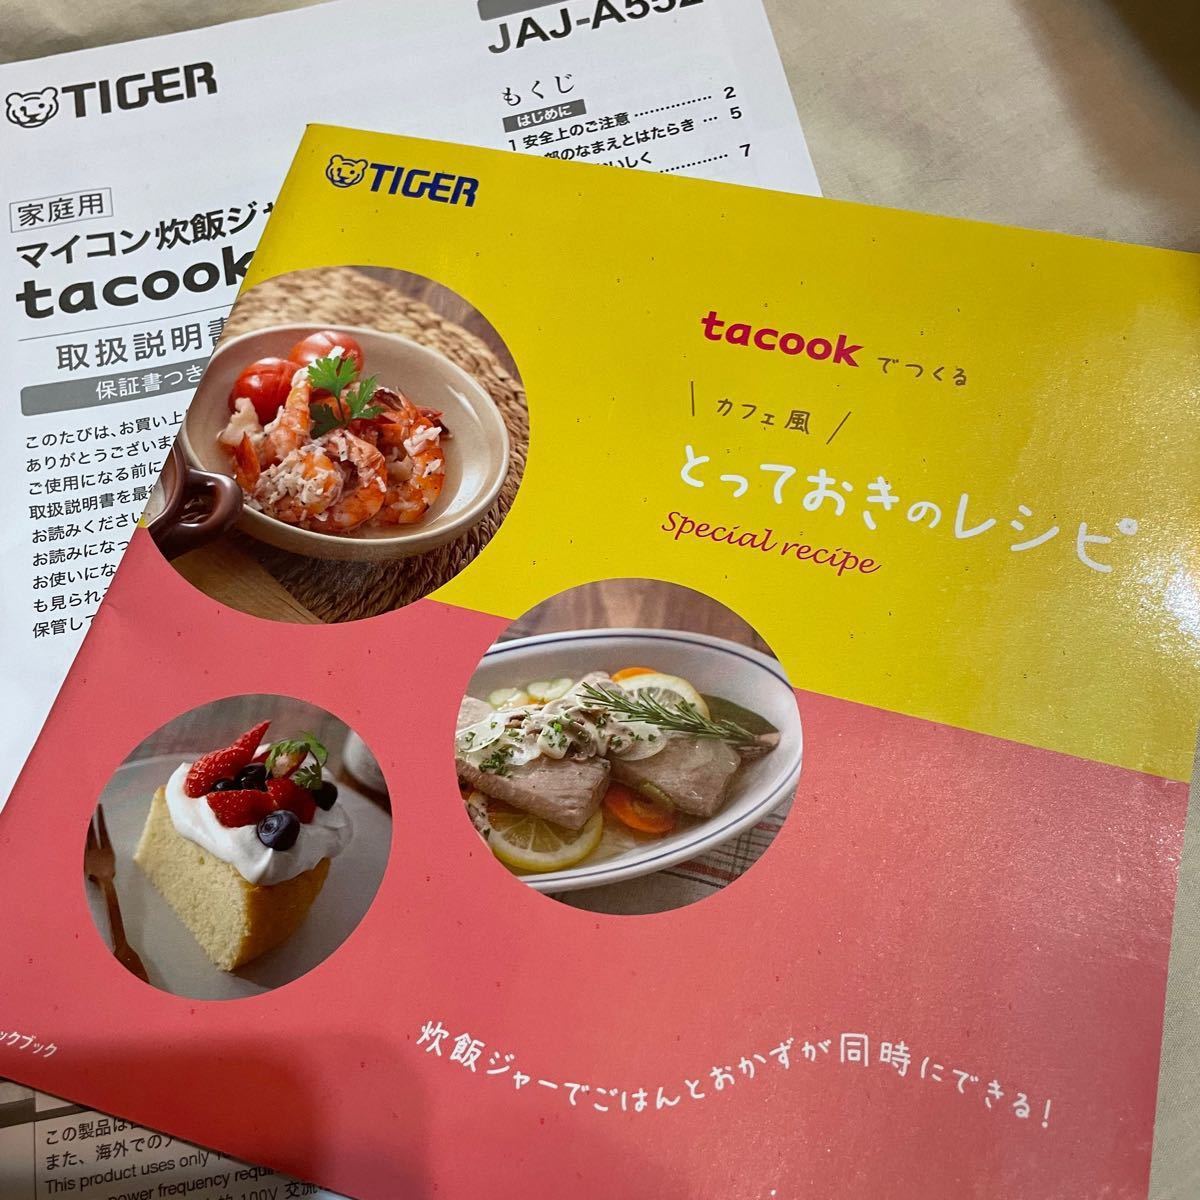 【未使用品】タイガー 炊飯器 TACOOK  TIGER マイコン炊飯ジャー 炊飯器3合